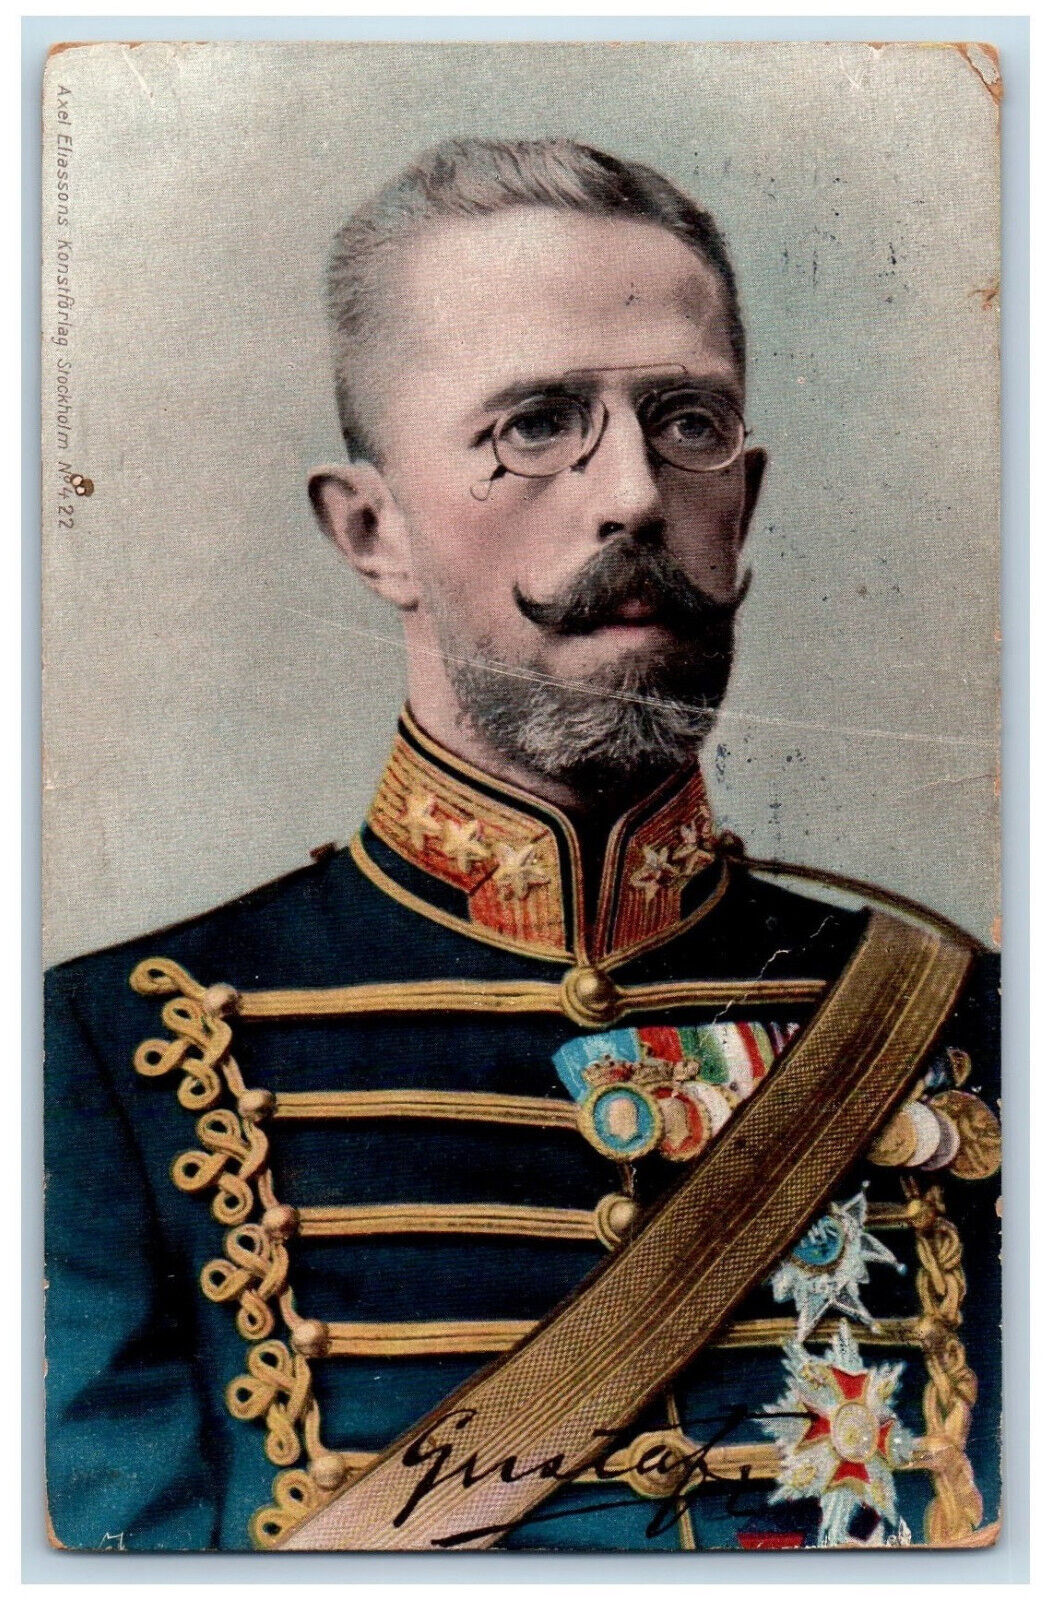 Stockholm Sweden Postcard King Gustaf V in Uniform and Medals 1908 Posted